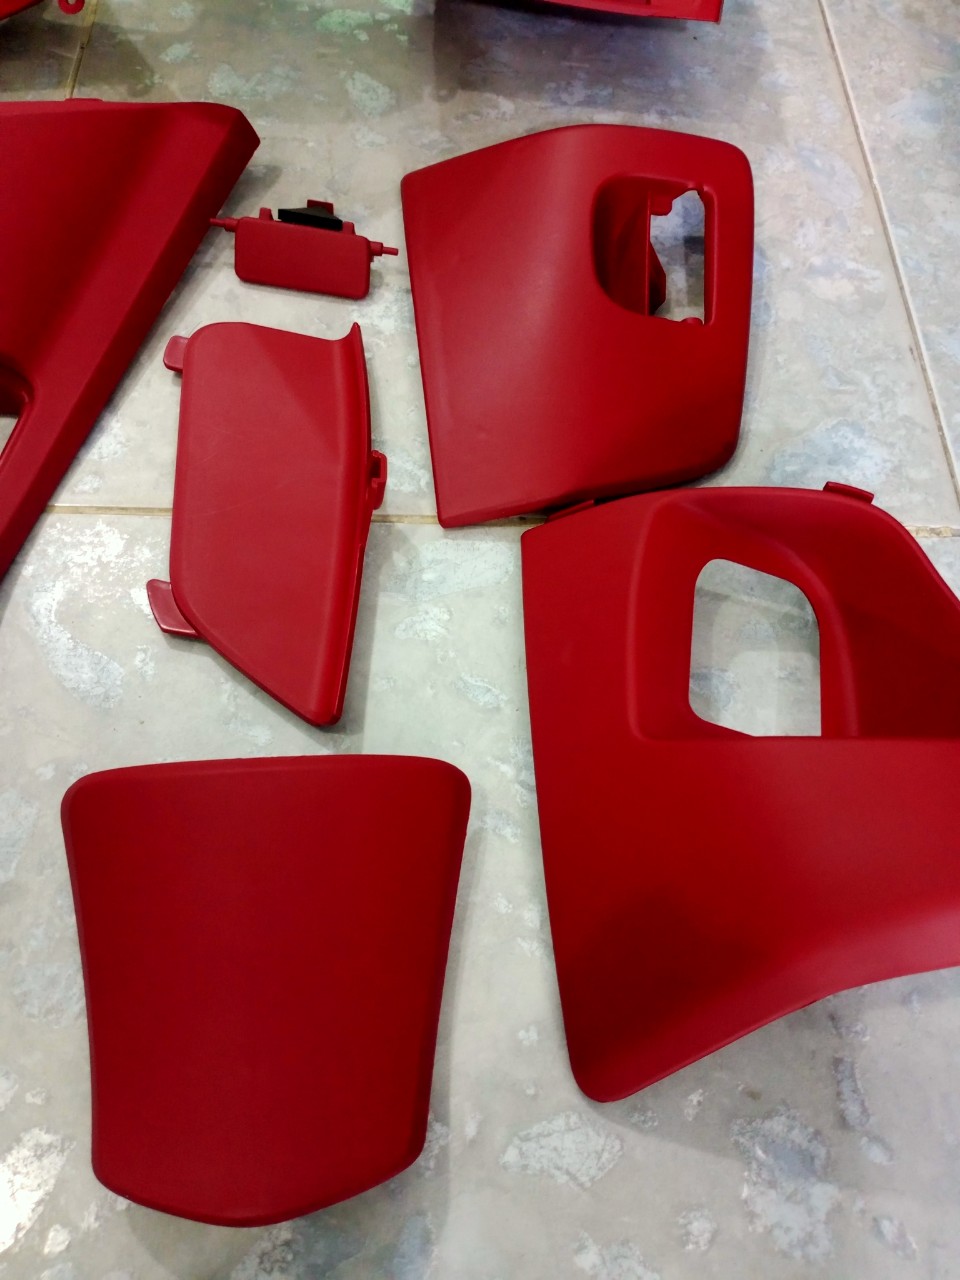 Full nhựa nhám màu đỏ pcx 2010-2014 hàng chính hãng honda